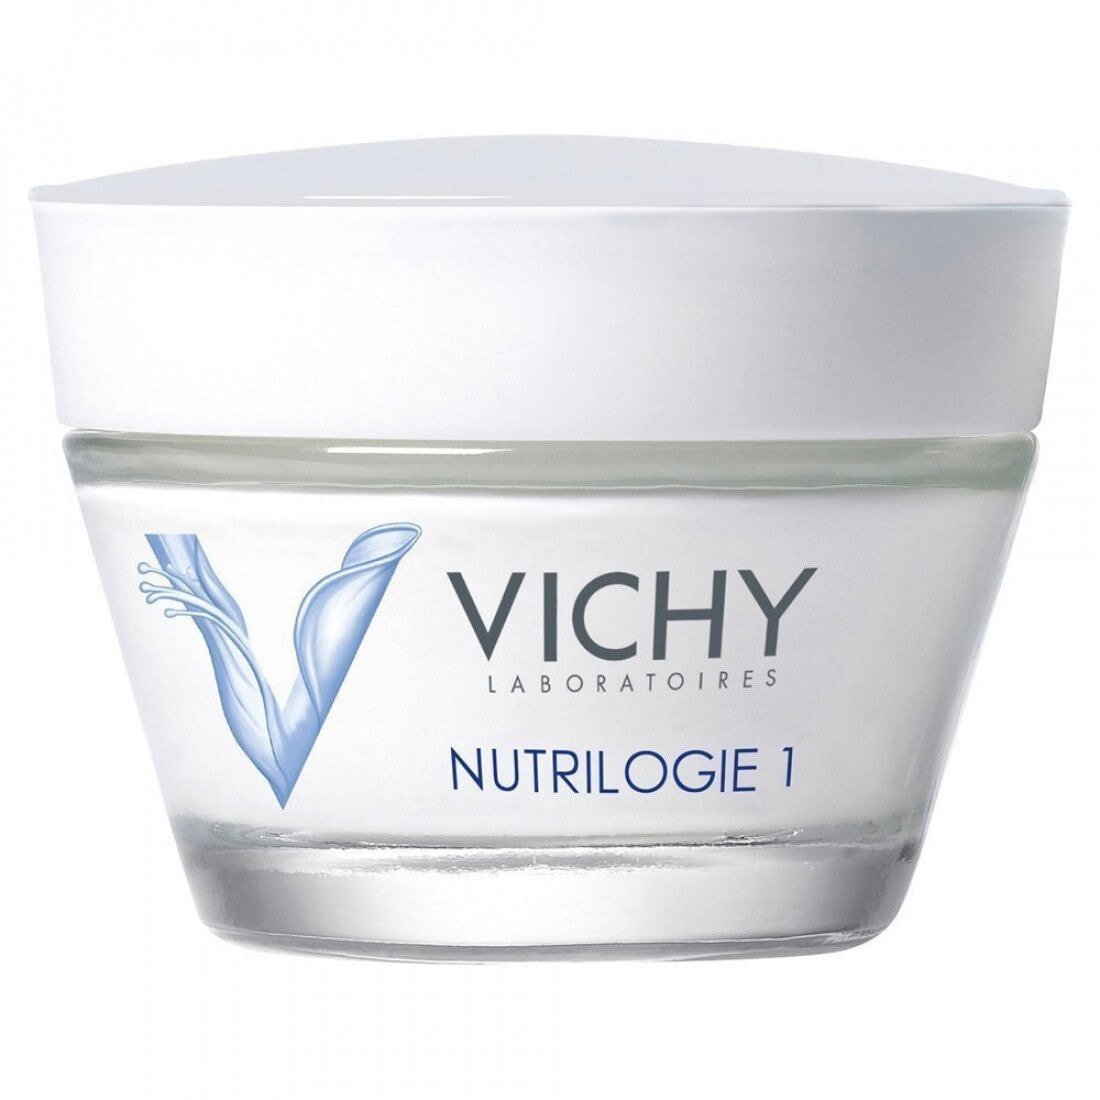 Vichy Nutrilogie 1 Интенсивный увлажняющий крем для сухой кожи, восстанавливающий защитный барьер 50 мл